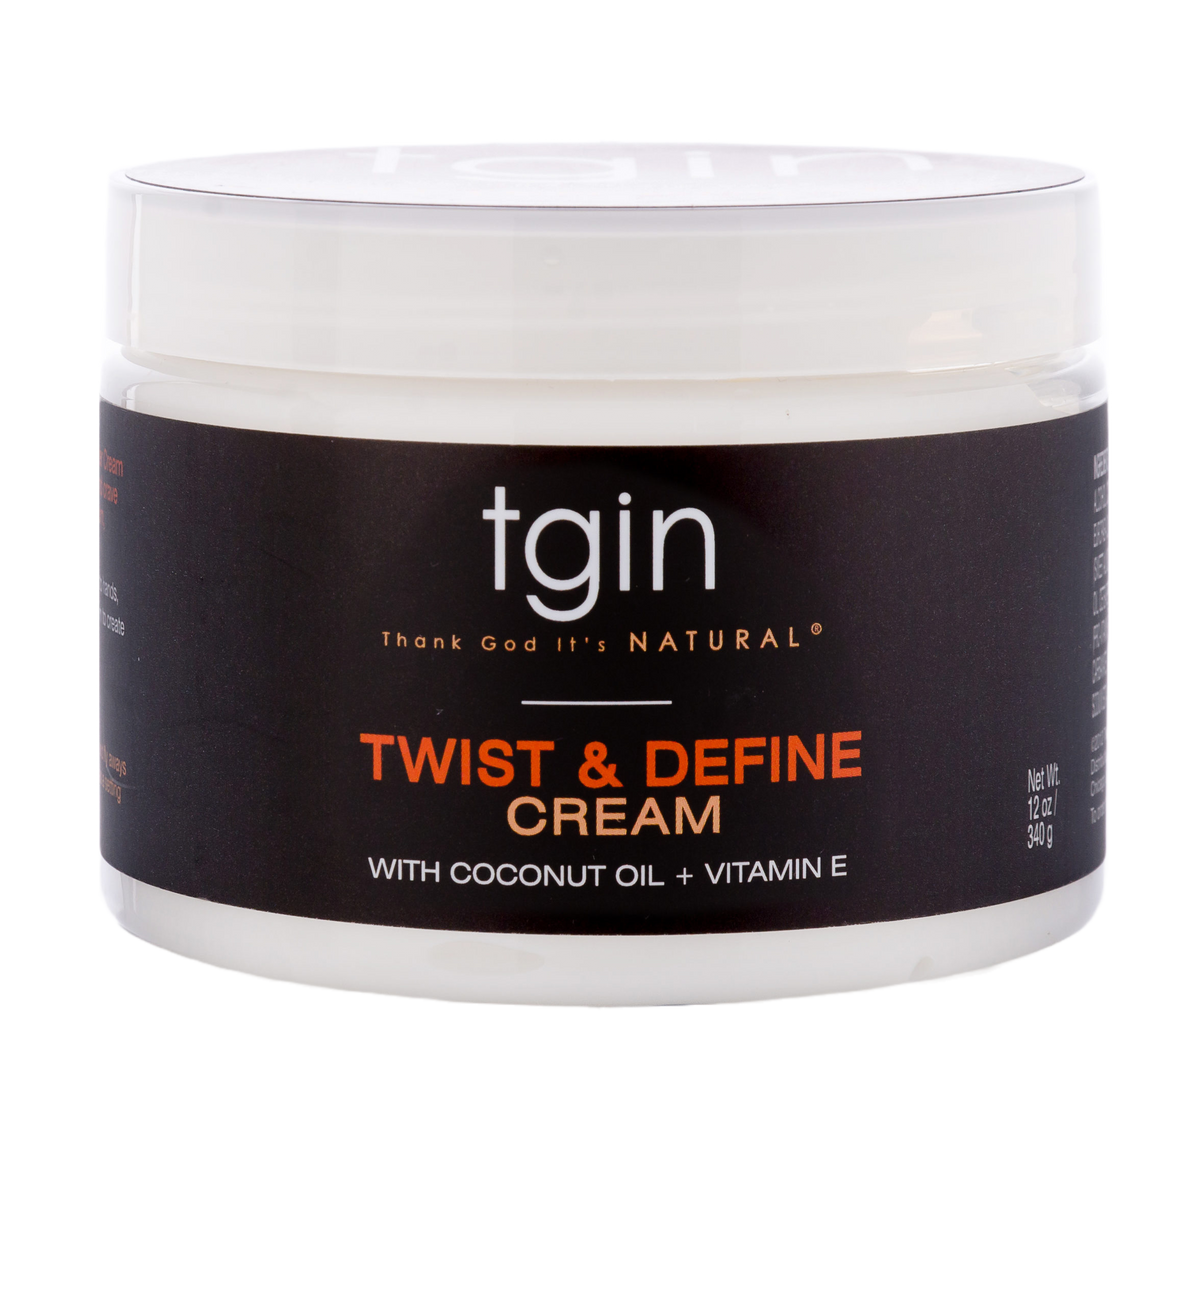 tgin Twist and Define Cream 12oz